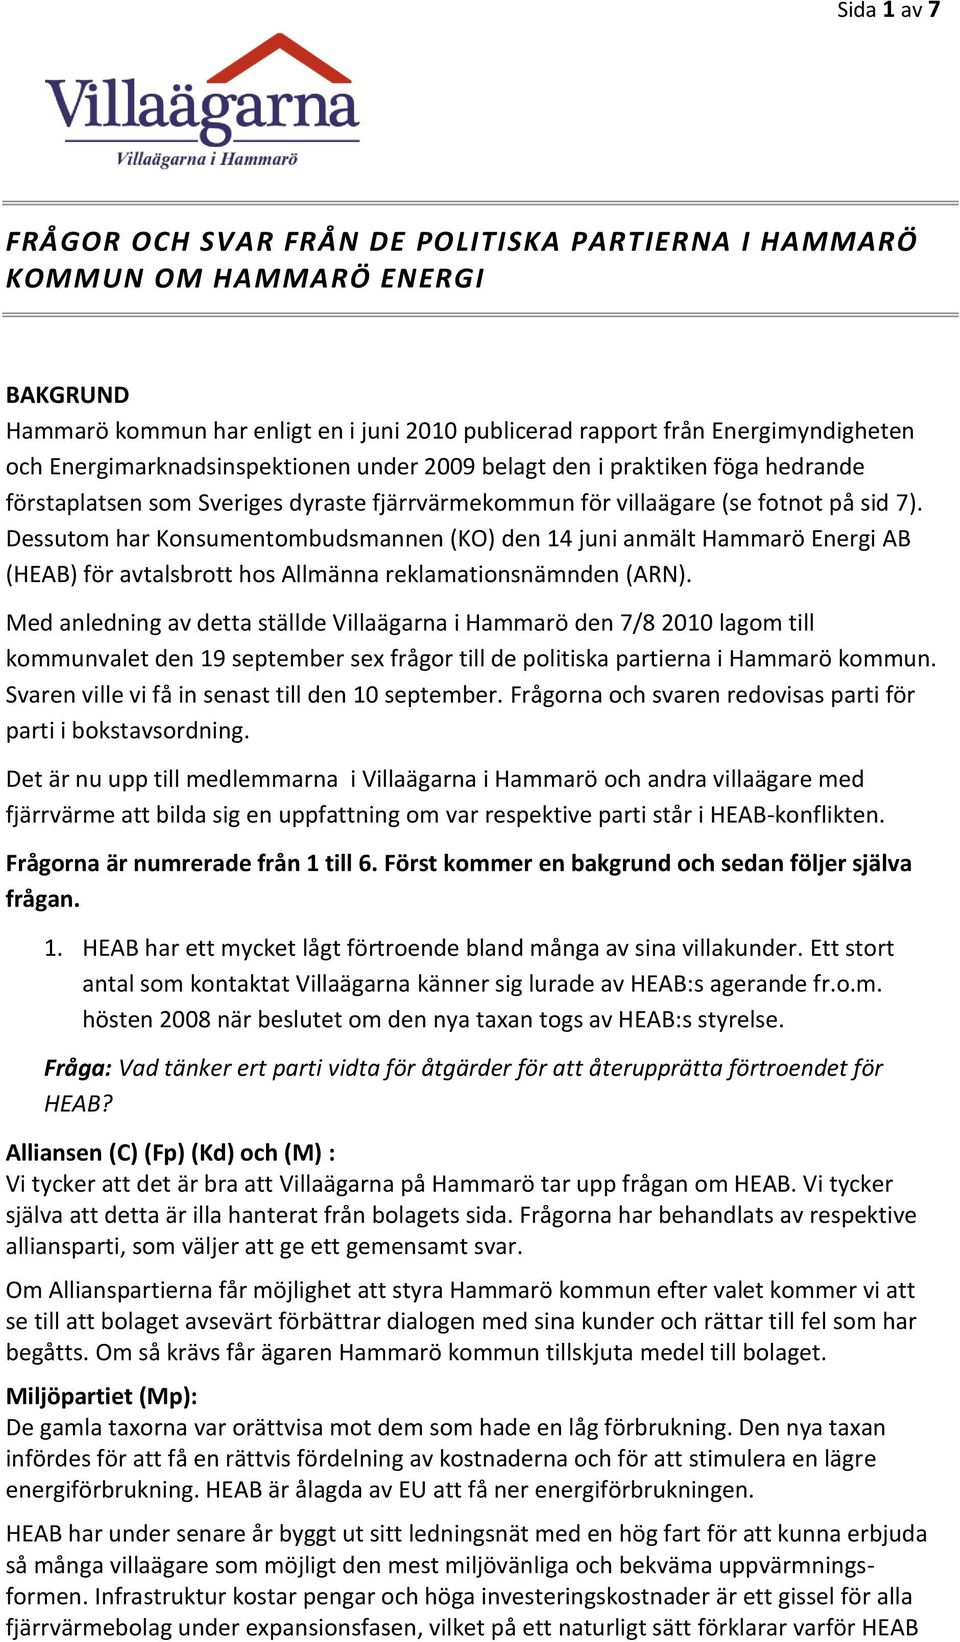 Dessutom har Konsumentombudsmannen (KO) den 14 juni anmält Hammarö Energi AB (HEAB) för avtalsbrott hos Allmänna reklamationsnämnden (ARN).